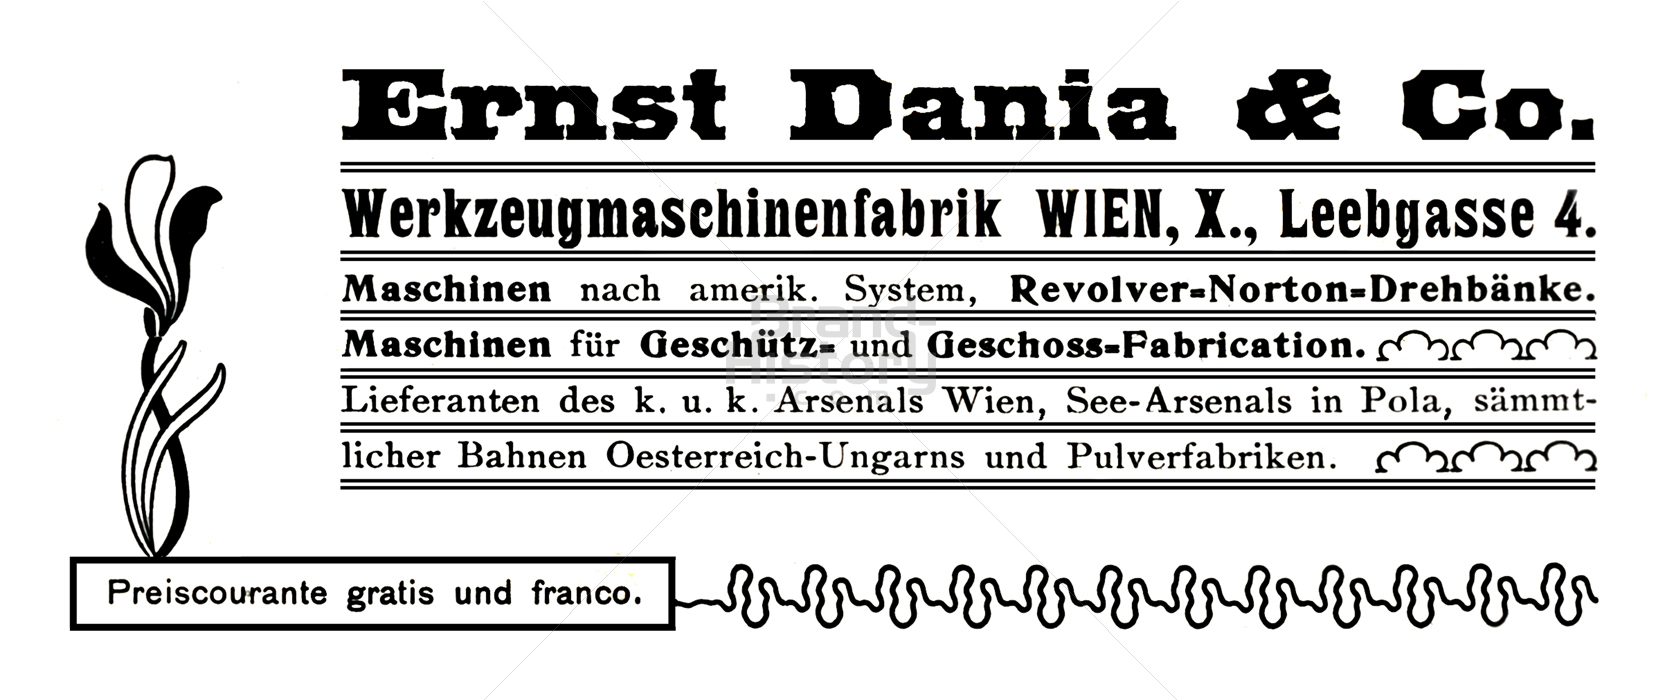 Ernst Dania & Co., Wien